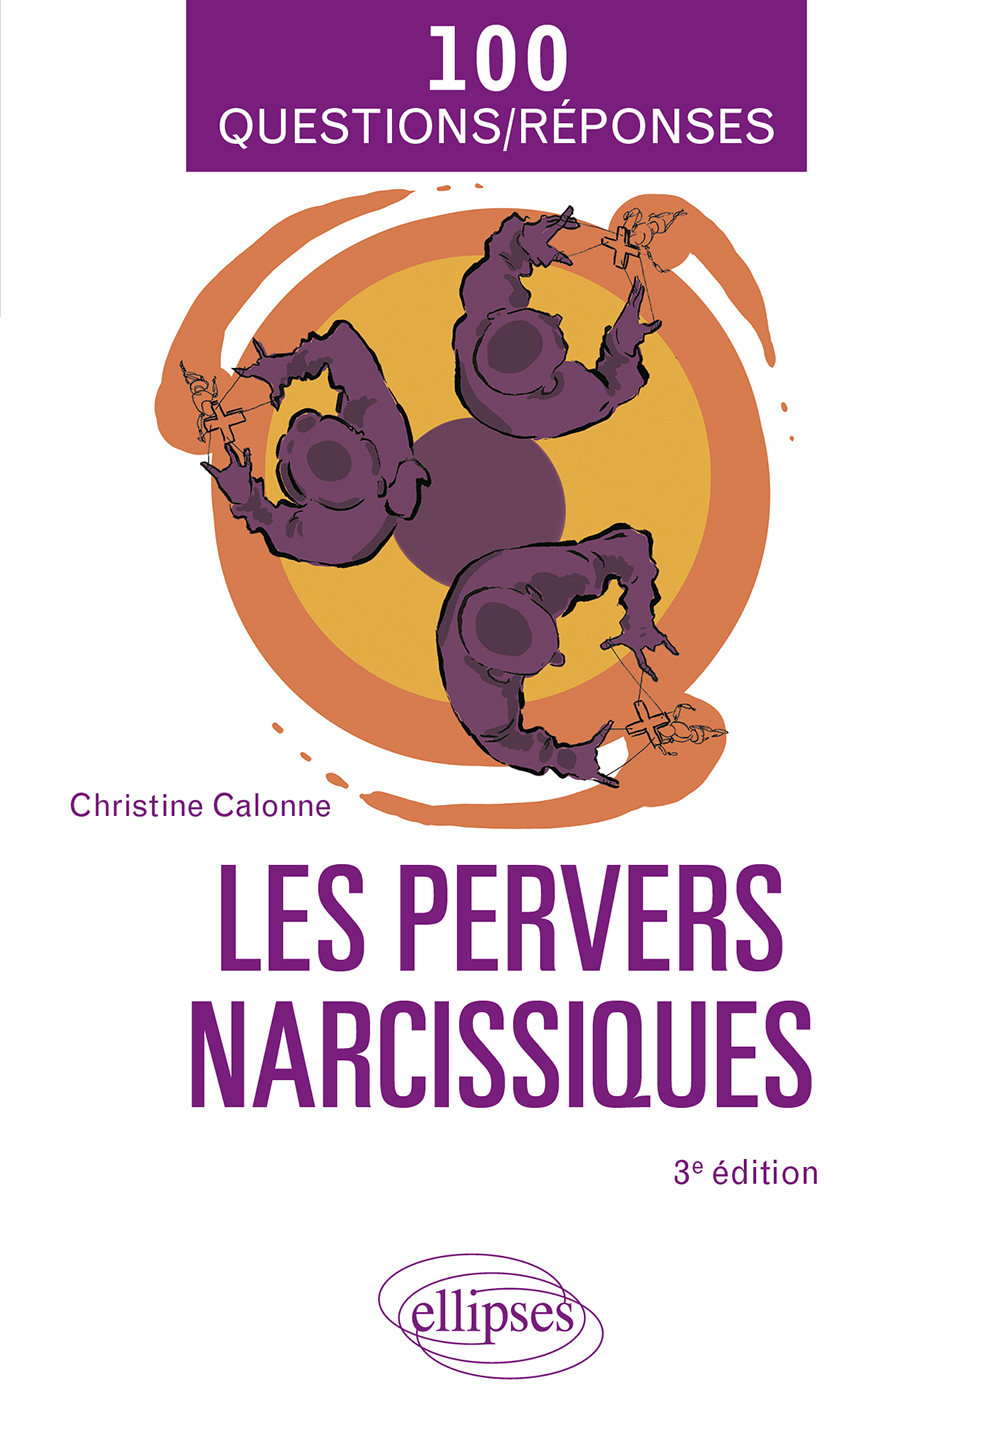 Les pervers narcissiques - 3e édition (9782340070189-front-cover)